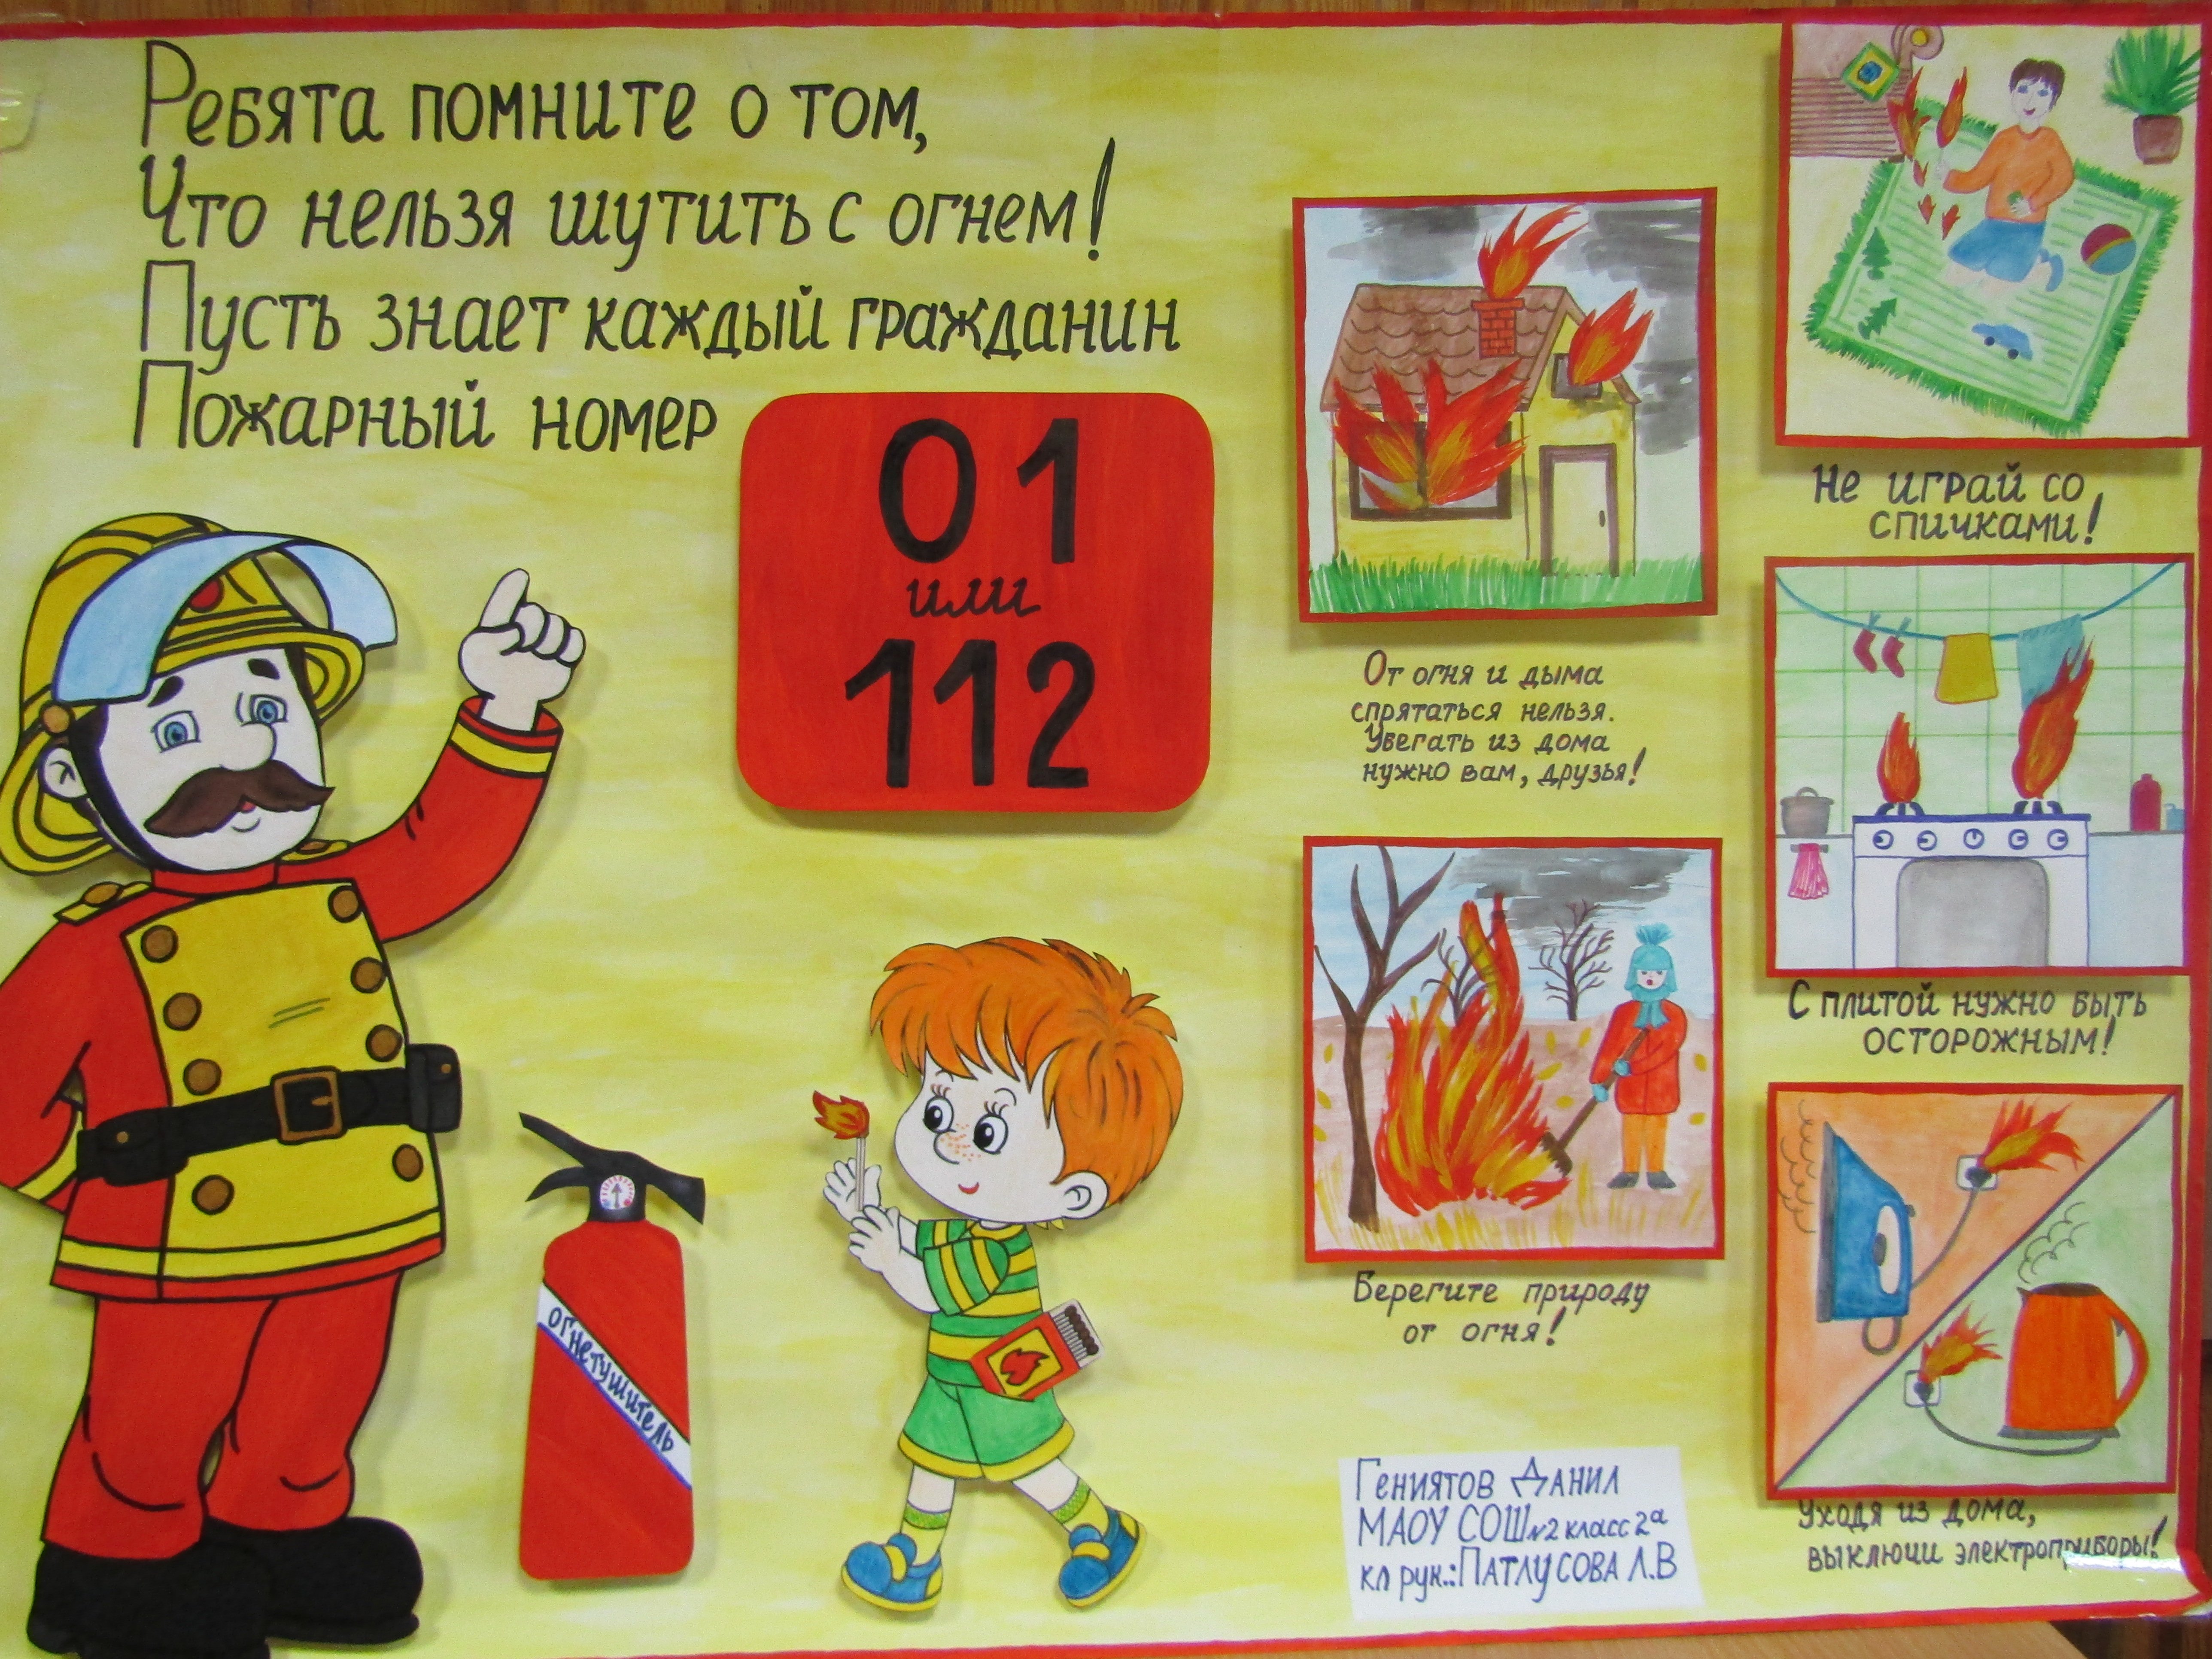 Серы ты не шути. Рисунок пожарная безопасность. Плакат на тему противопожарная безопасность. Противопожарная безопасность рисунки. Плакат на тему плжарной безопасност.